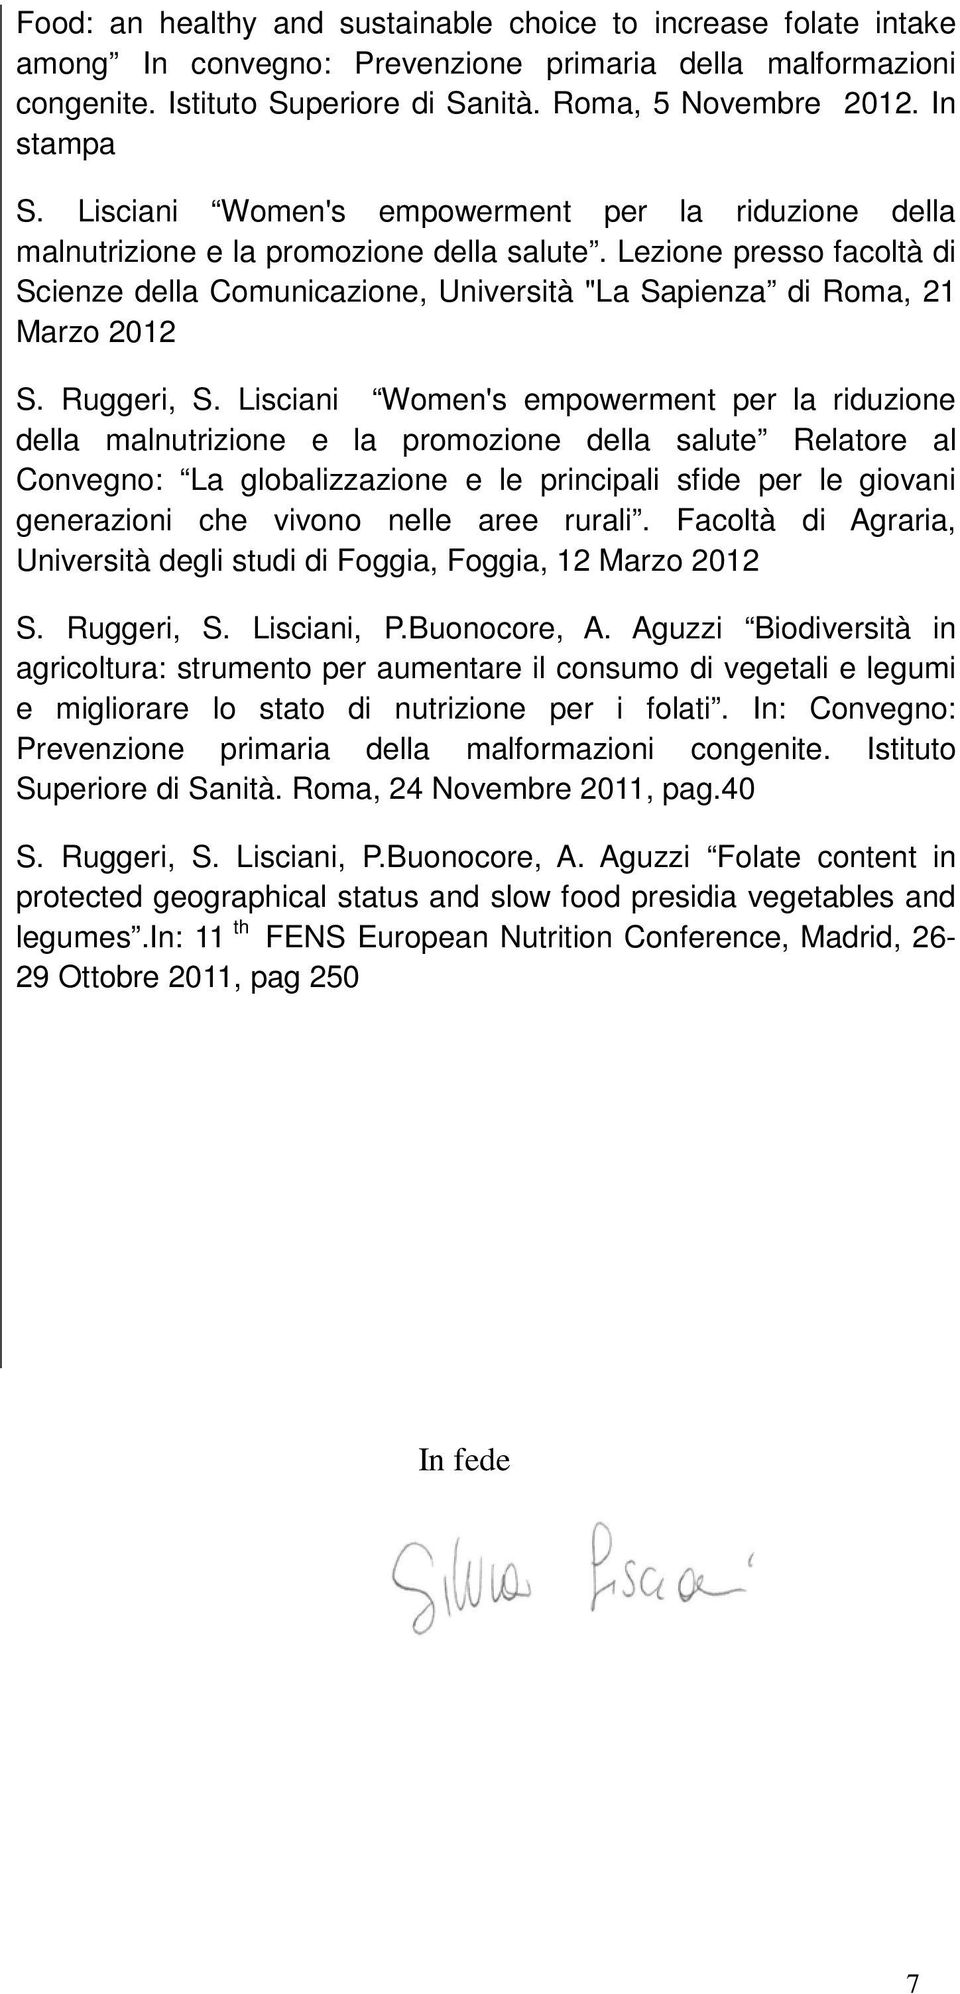 Lezione presso facoltà di Scienze della Comunicazione, Università "La Sapienza di Roma, 21 Marzo 2012 S. Ruggeri, S.